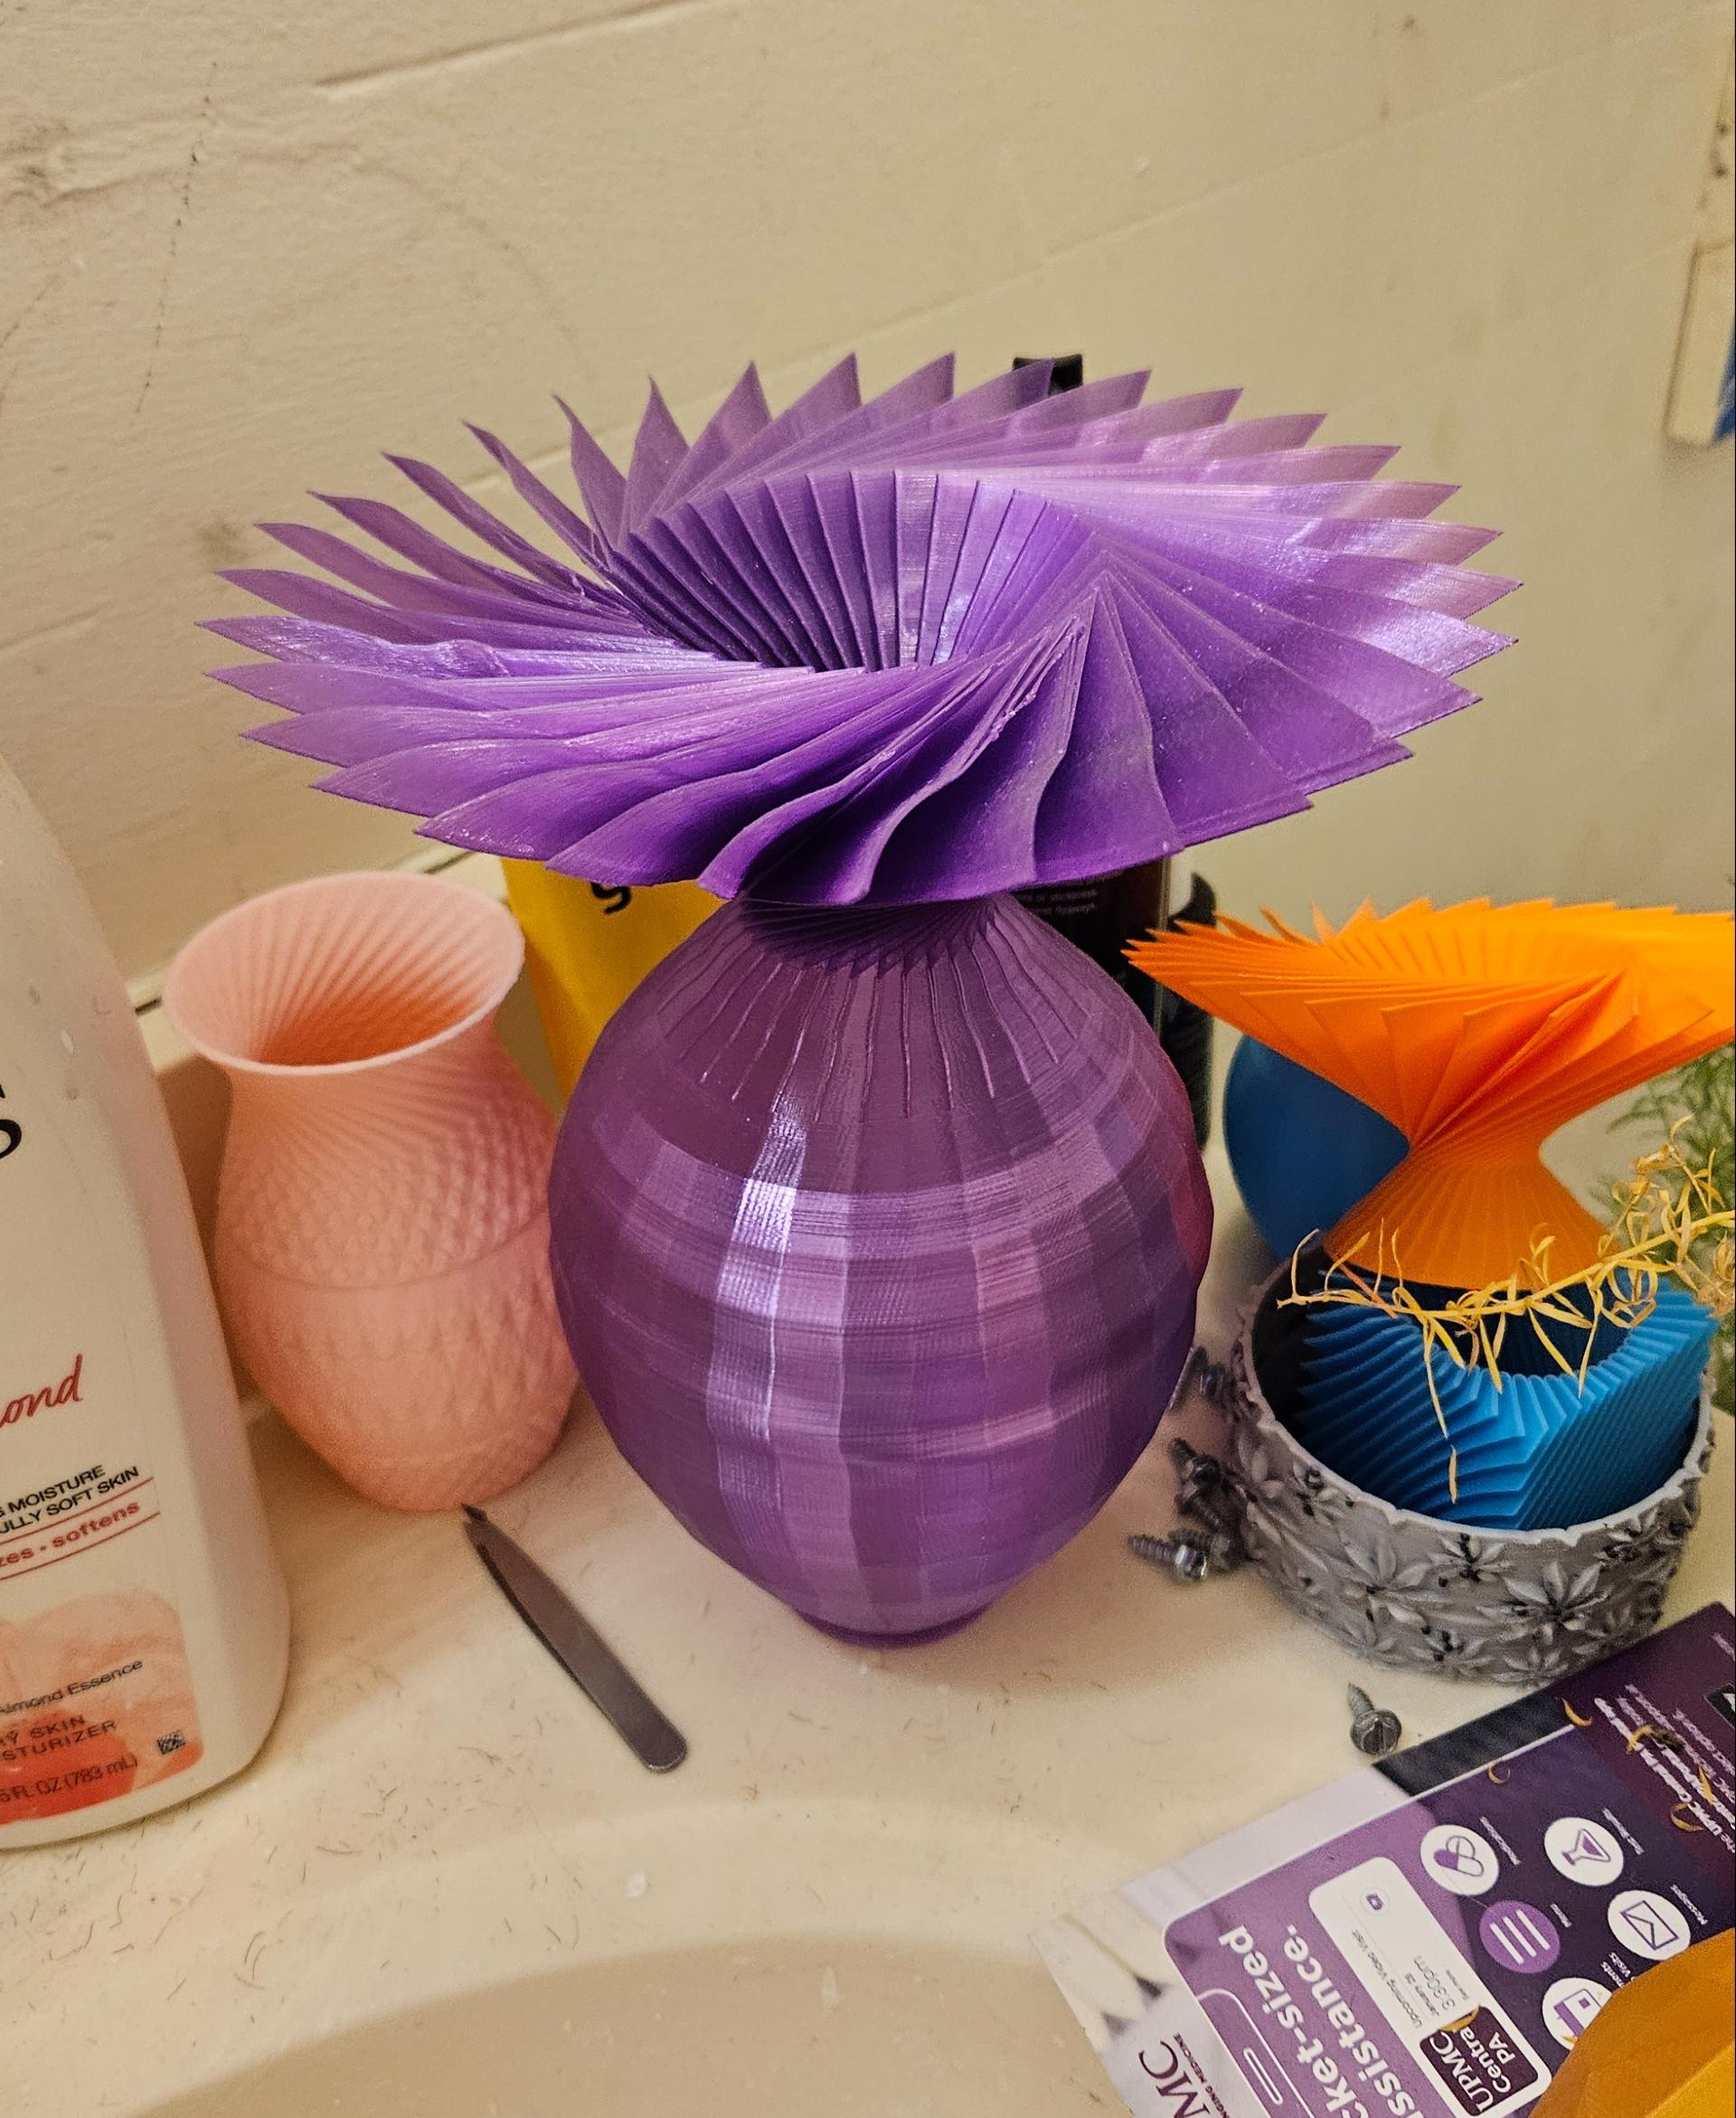 Petal vase challenge  - Pedal vase printed on CR10 - 3d model